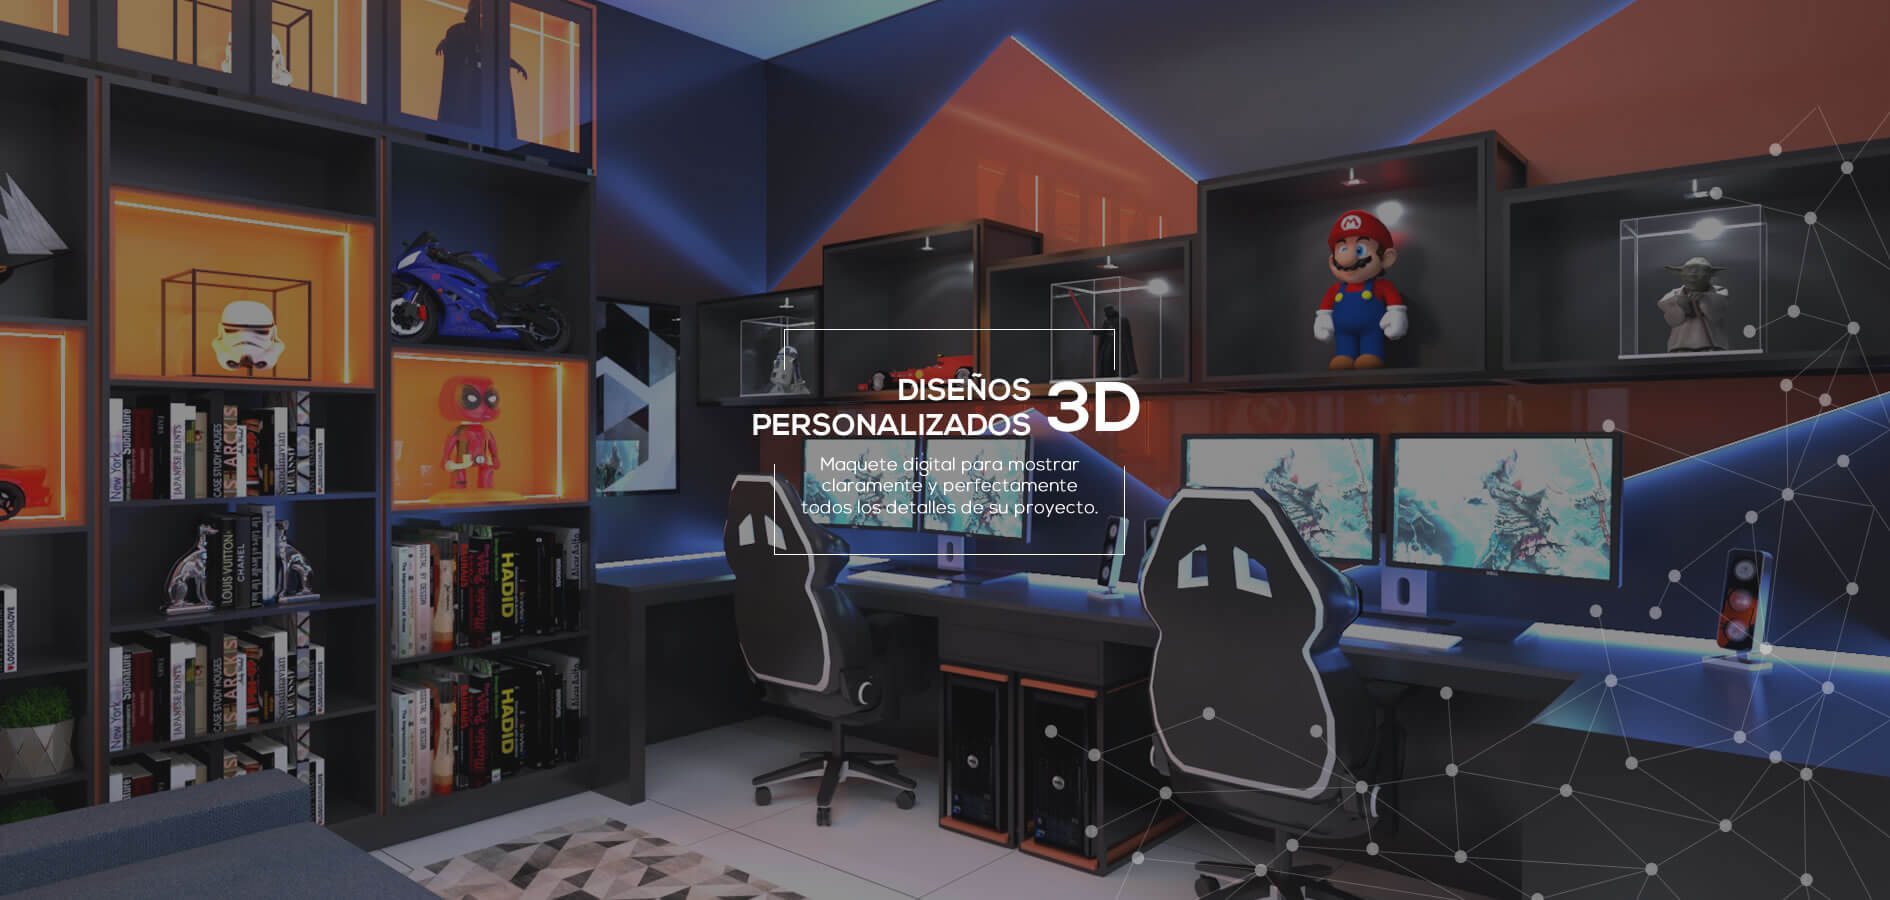 Proyectos Personalizados 3D